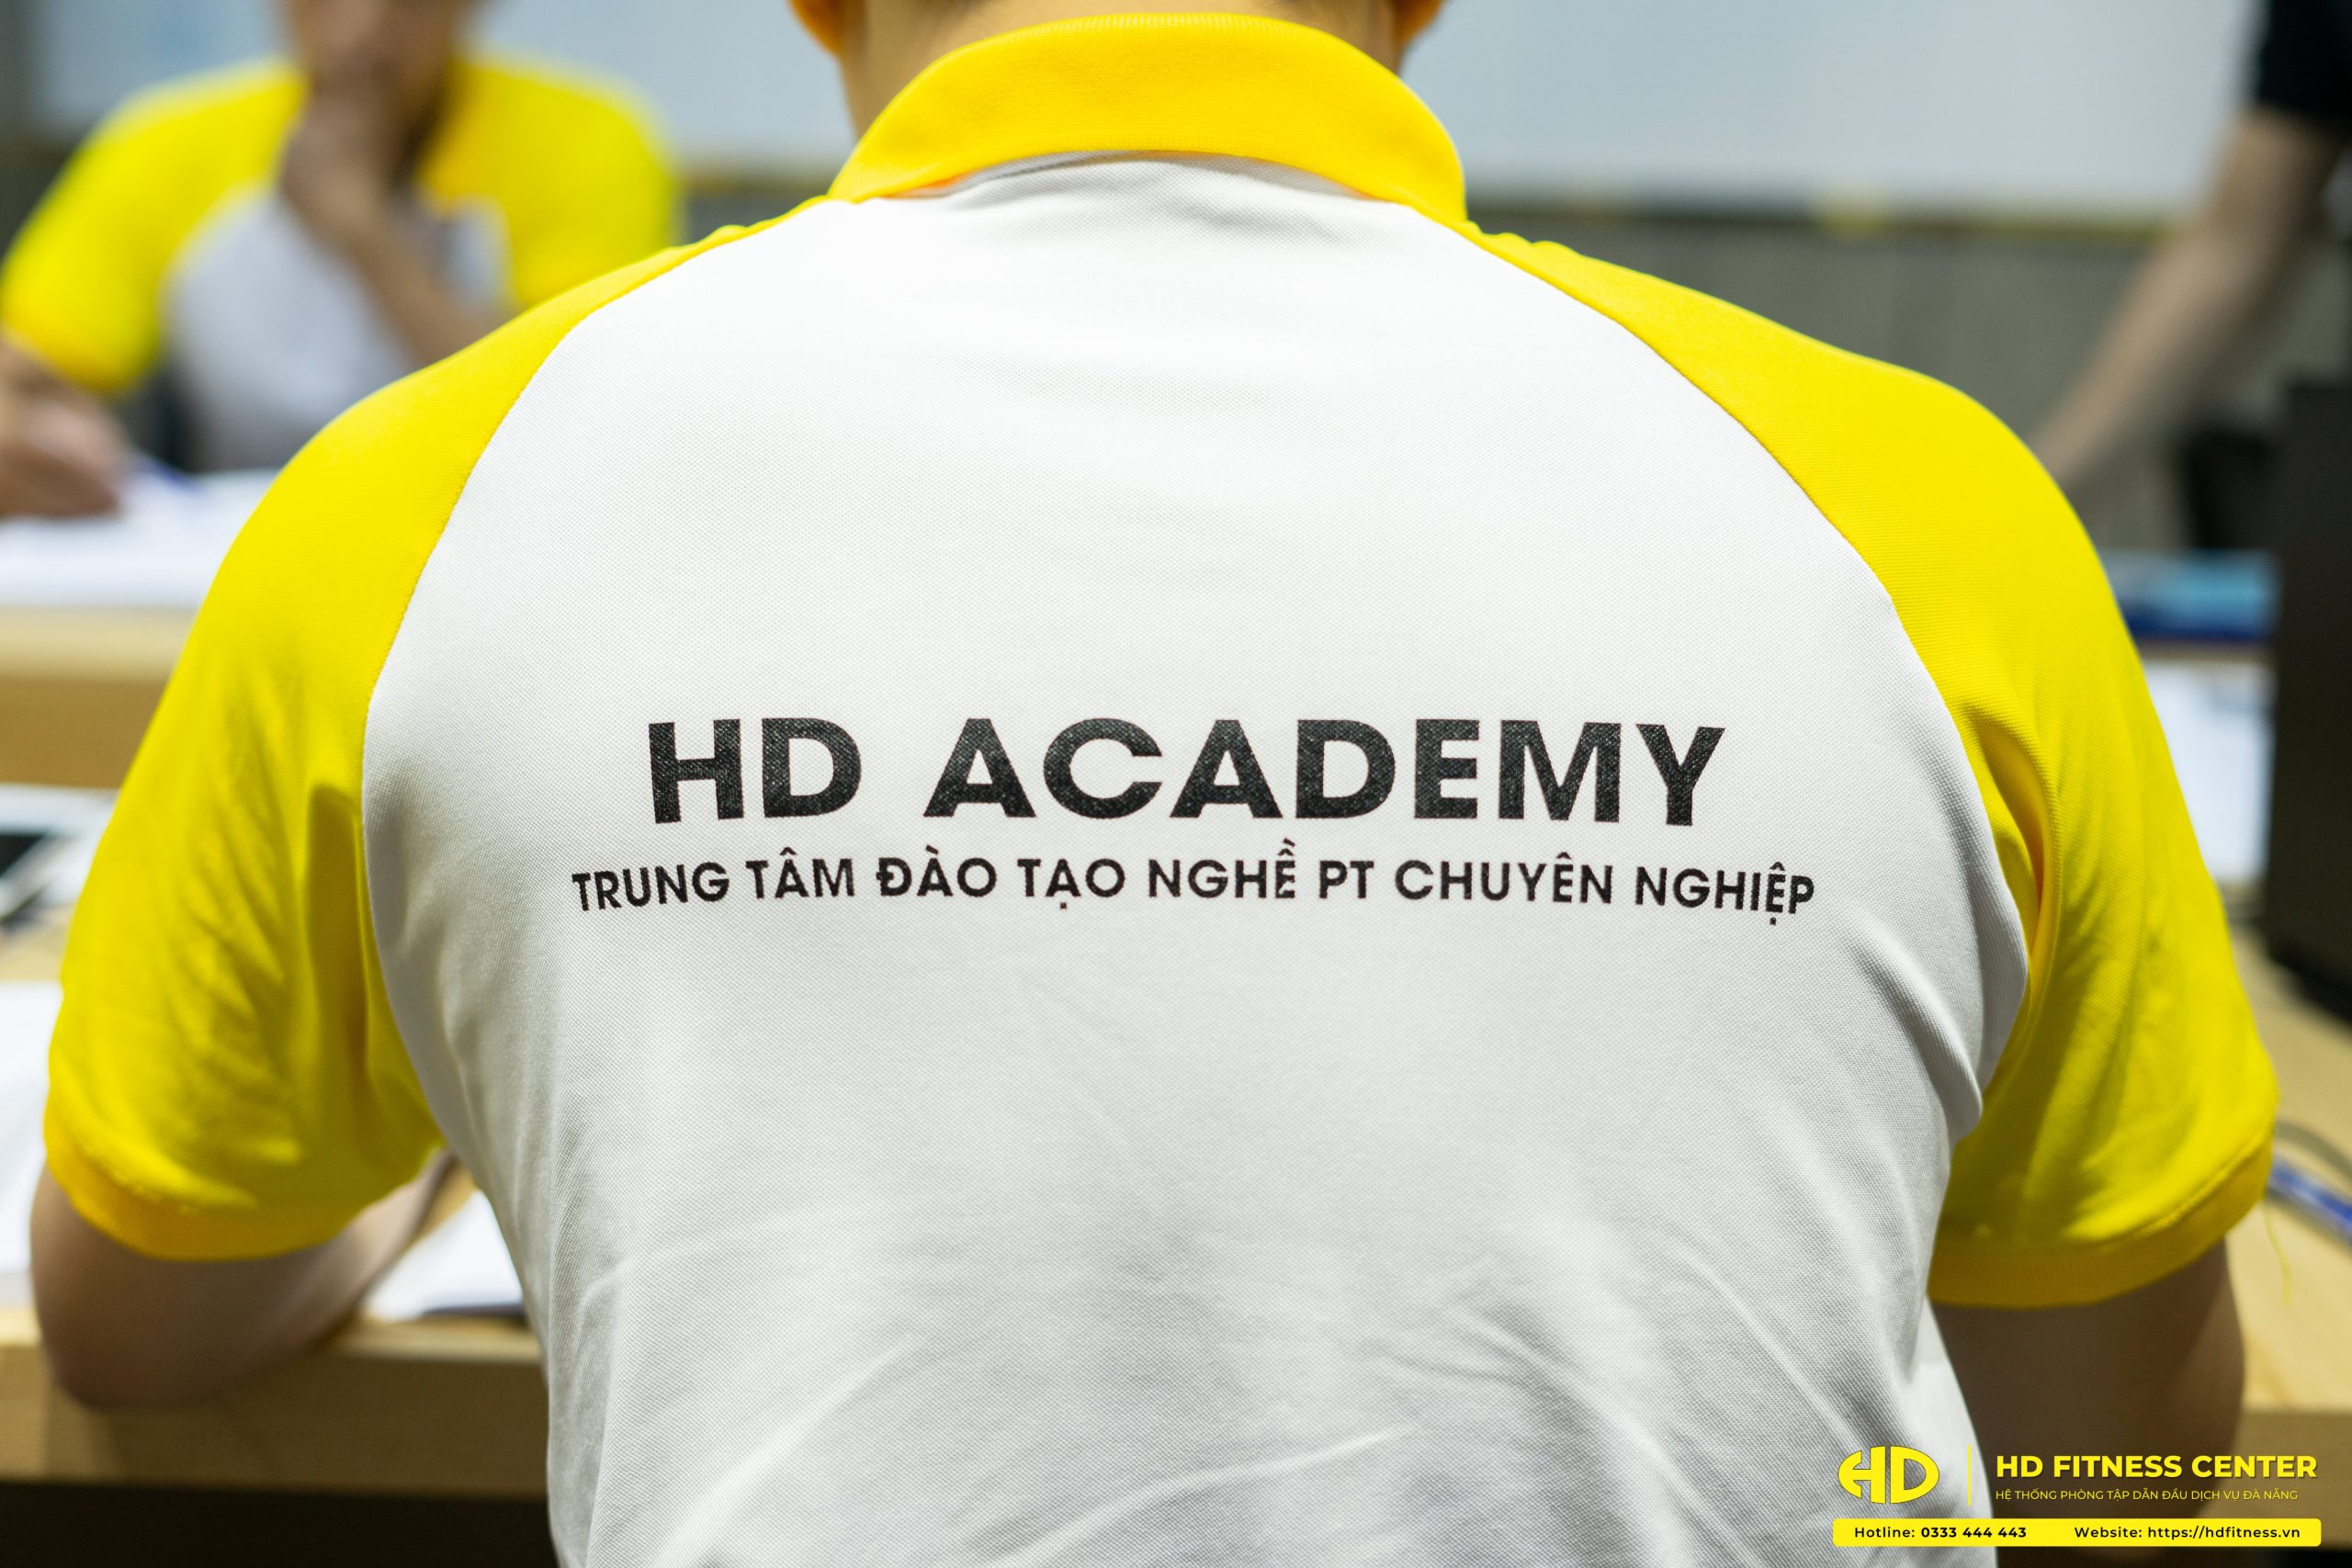 Cơ sở đào tạo PT uy tín - HD Academy